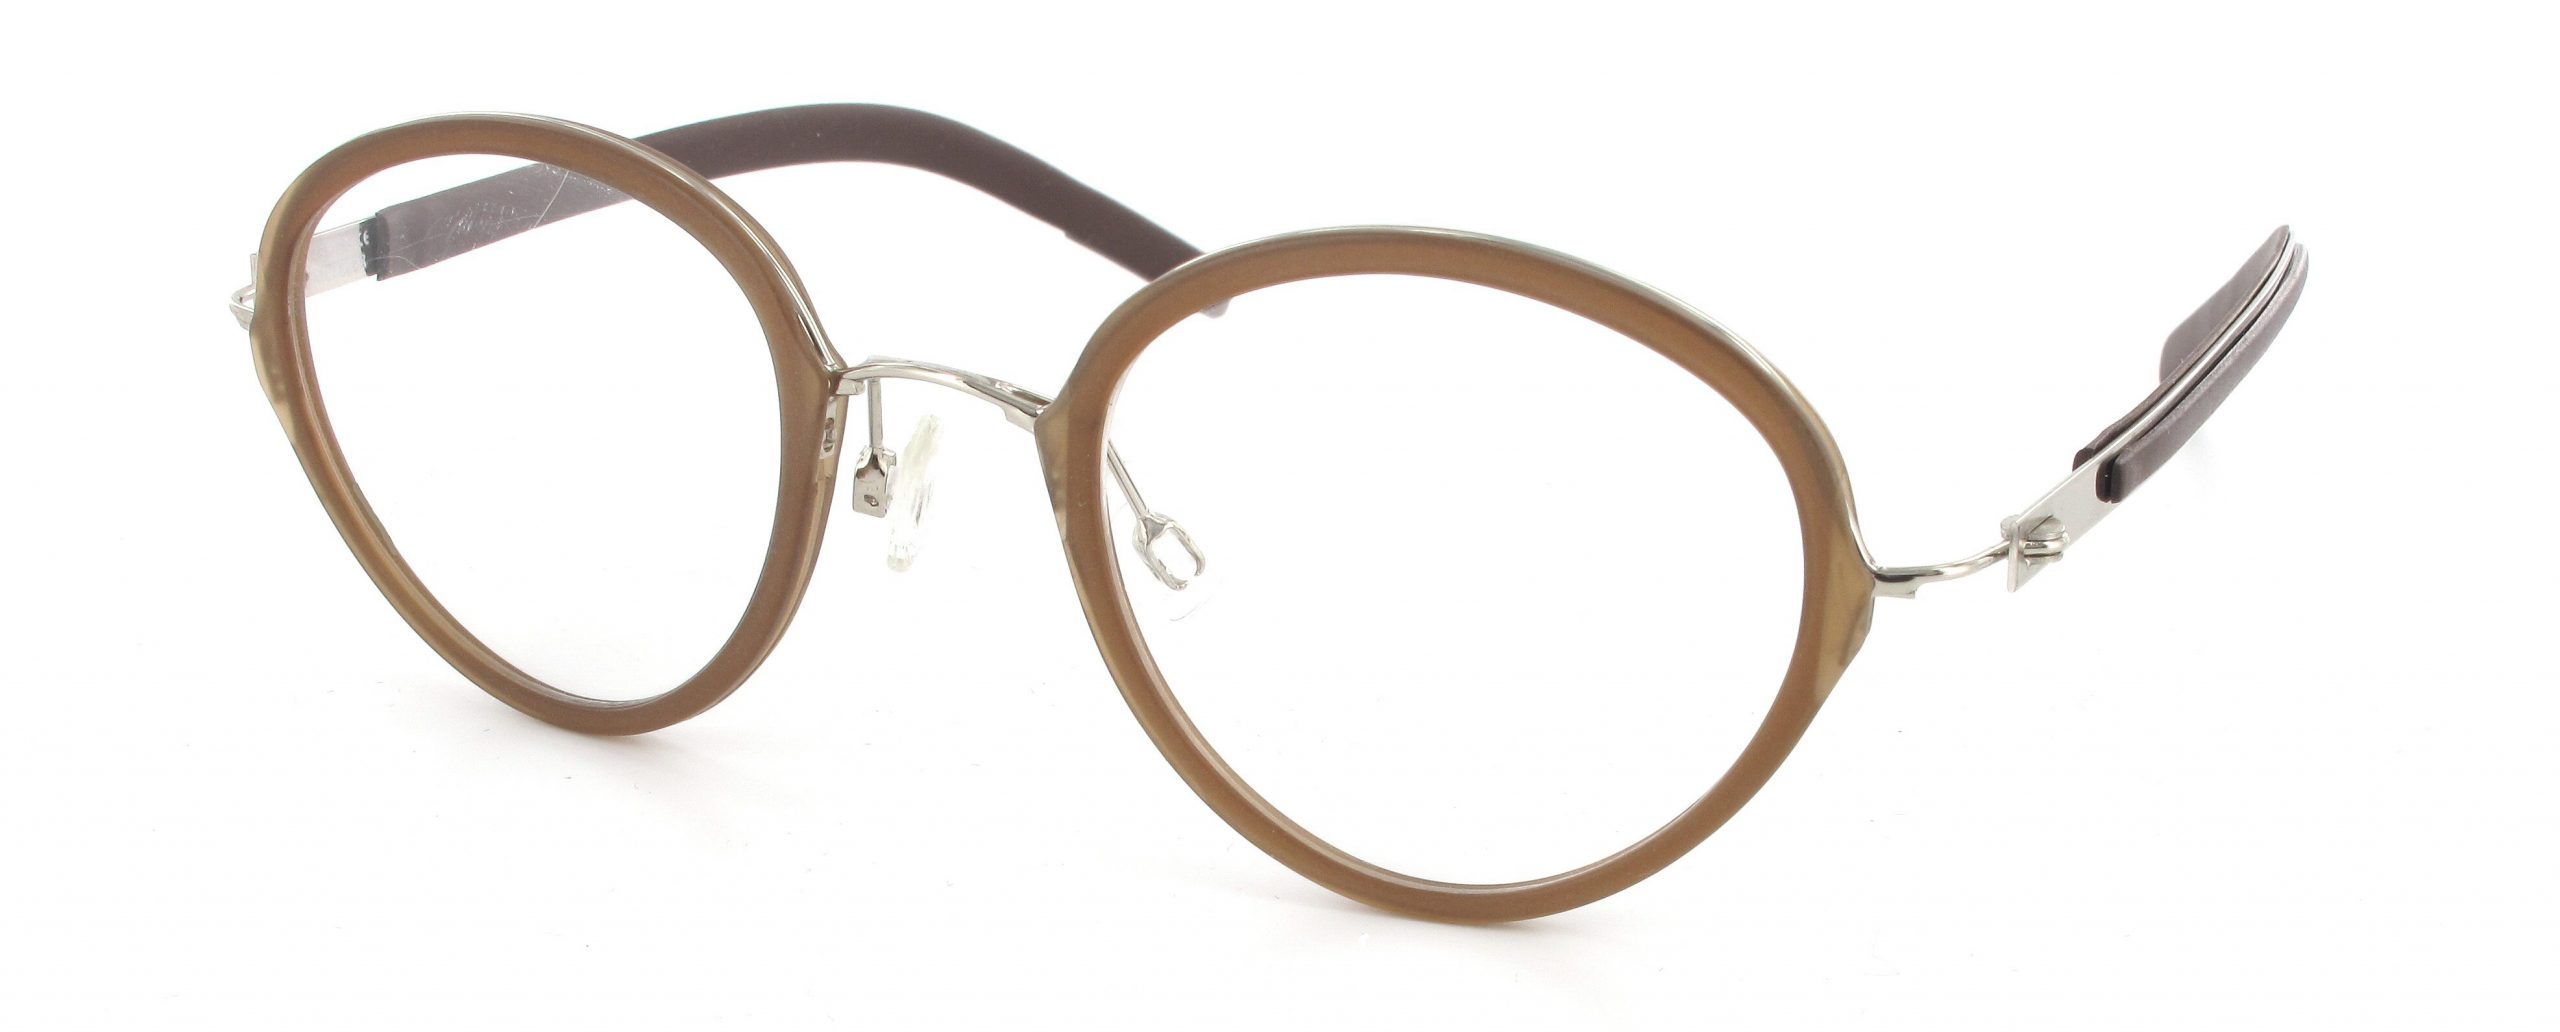 Leesbril Metzler 5050 A bruin/zilver